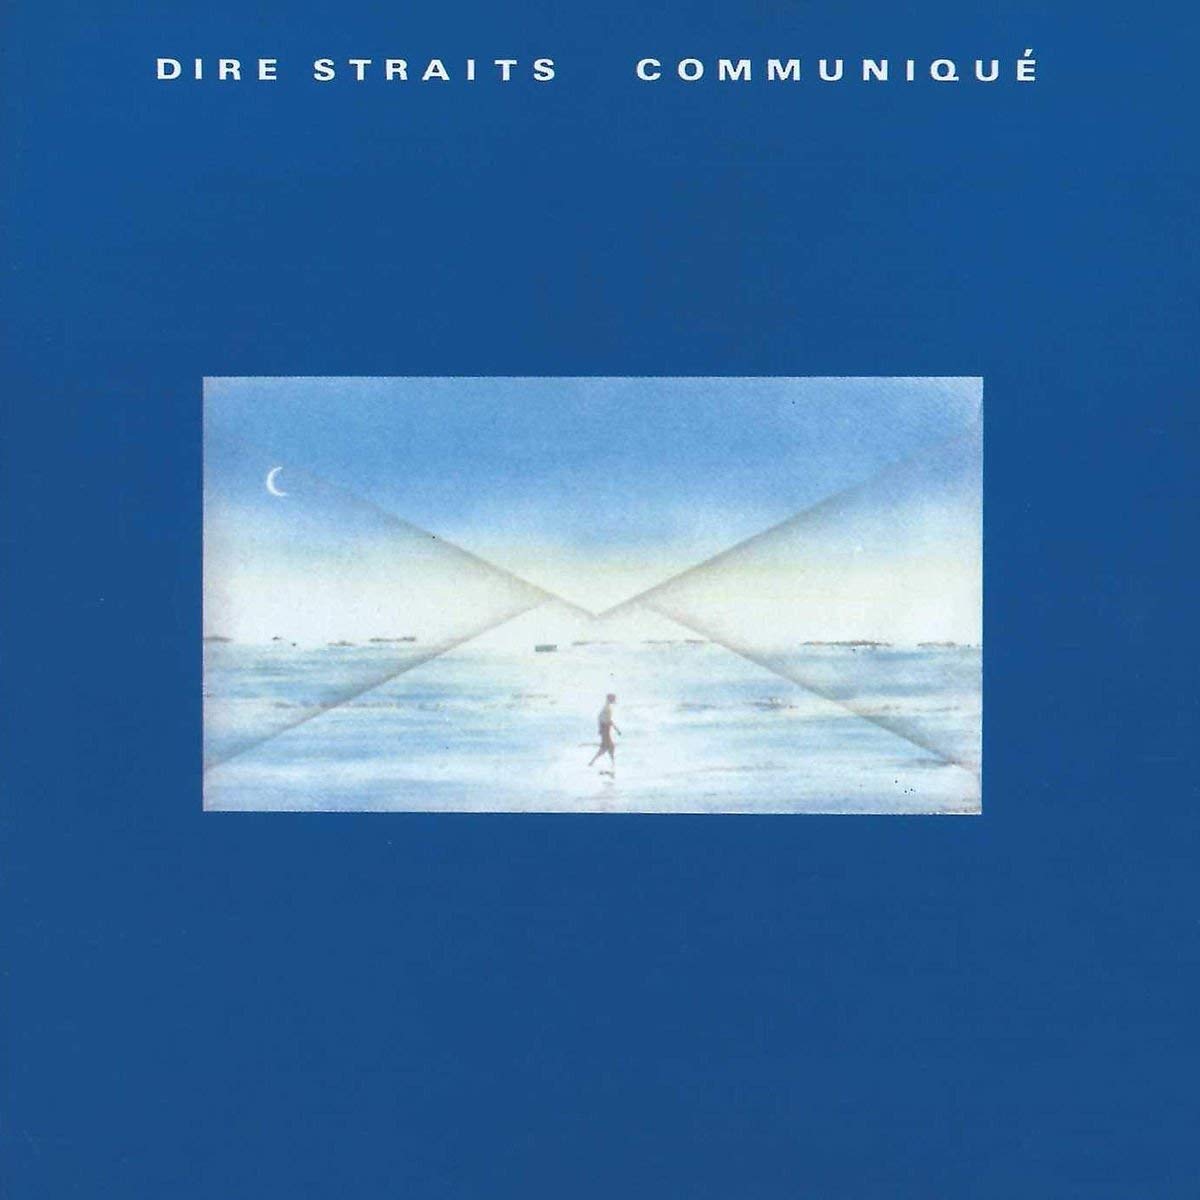 Communique | Dire Straits